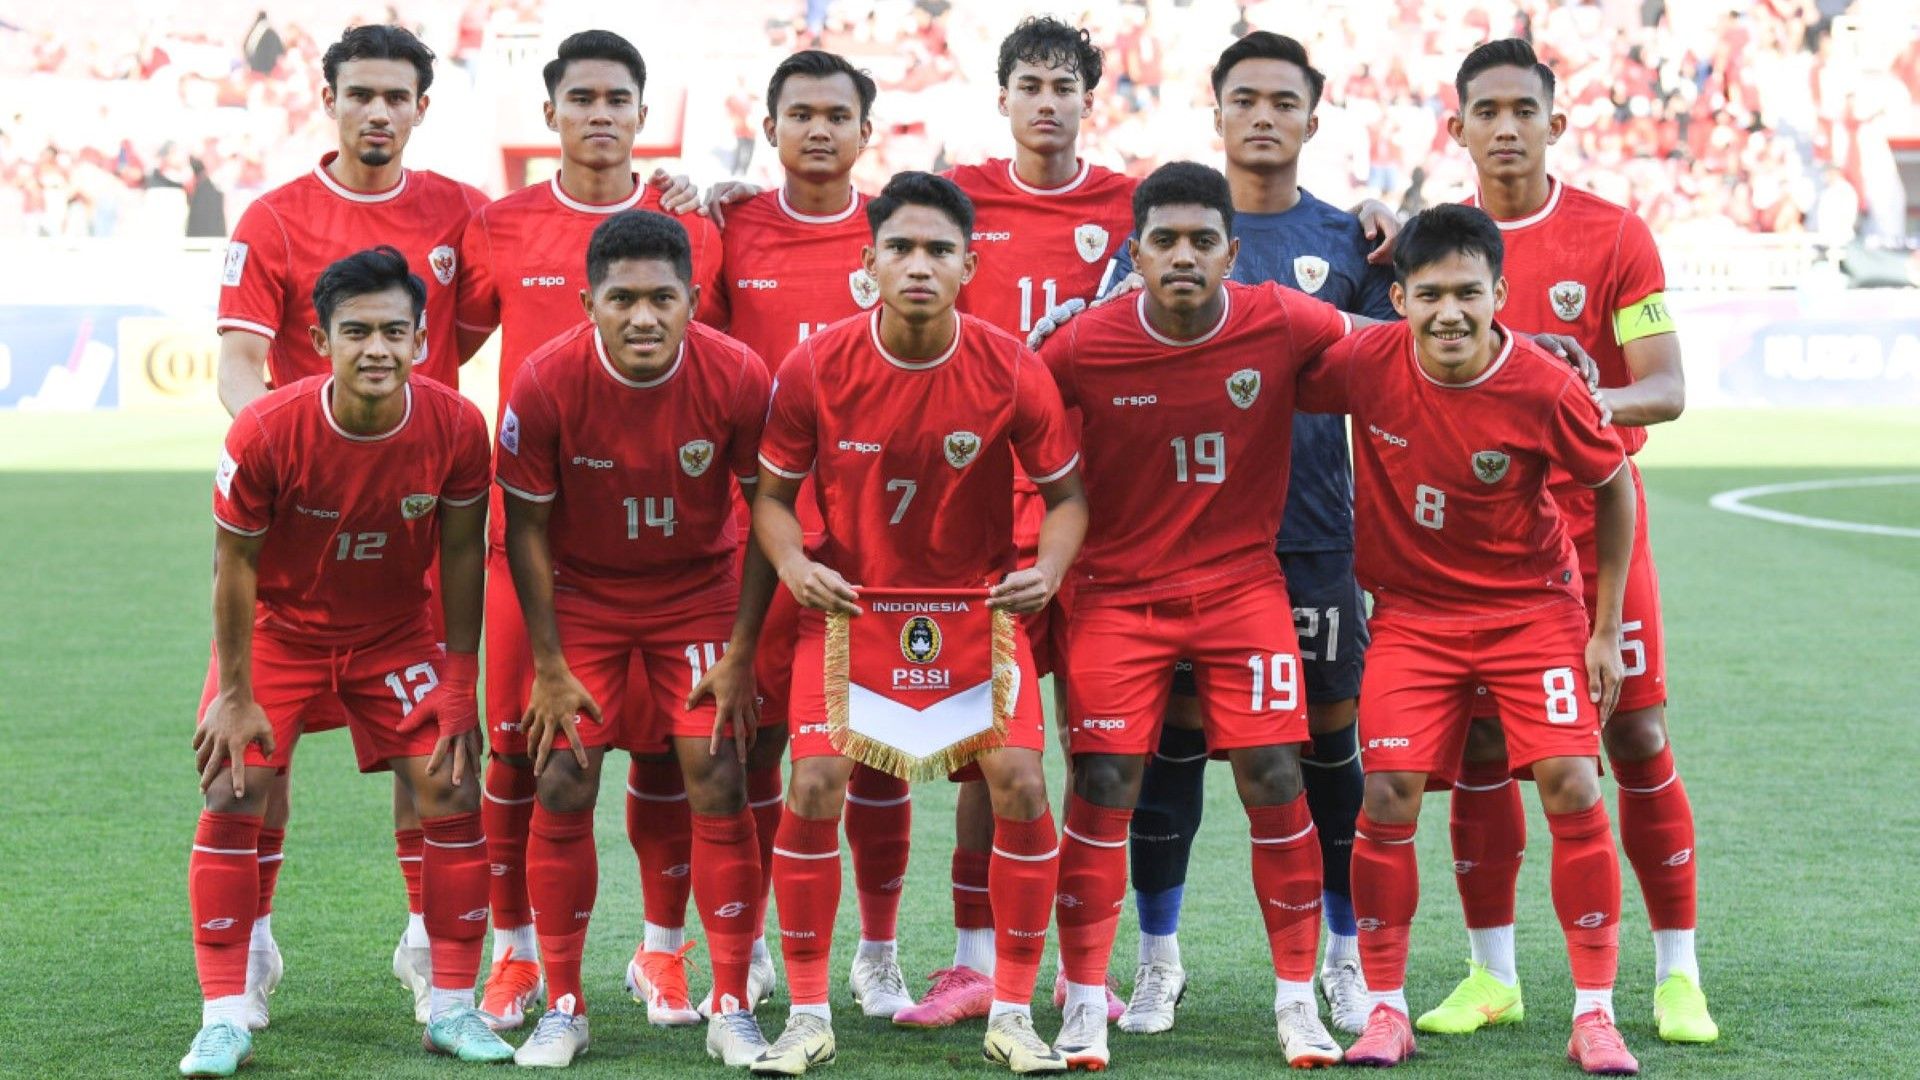 Jadwal Yordania U-23 Vs Indonesia U-23: Live Streaming & Siaran Langsung TV, Prediksi Skor